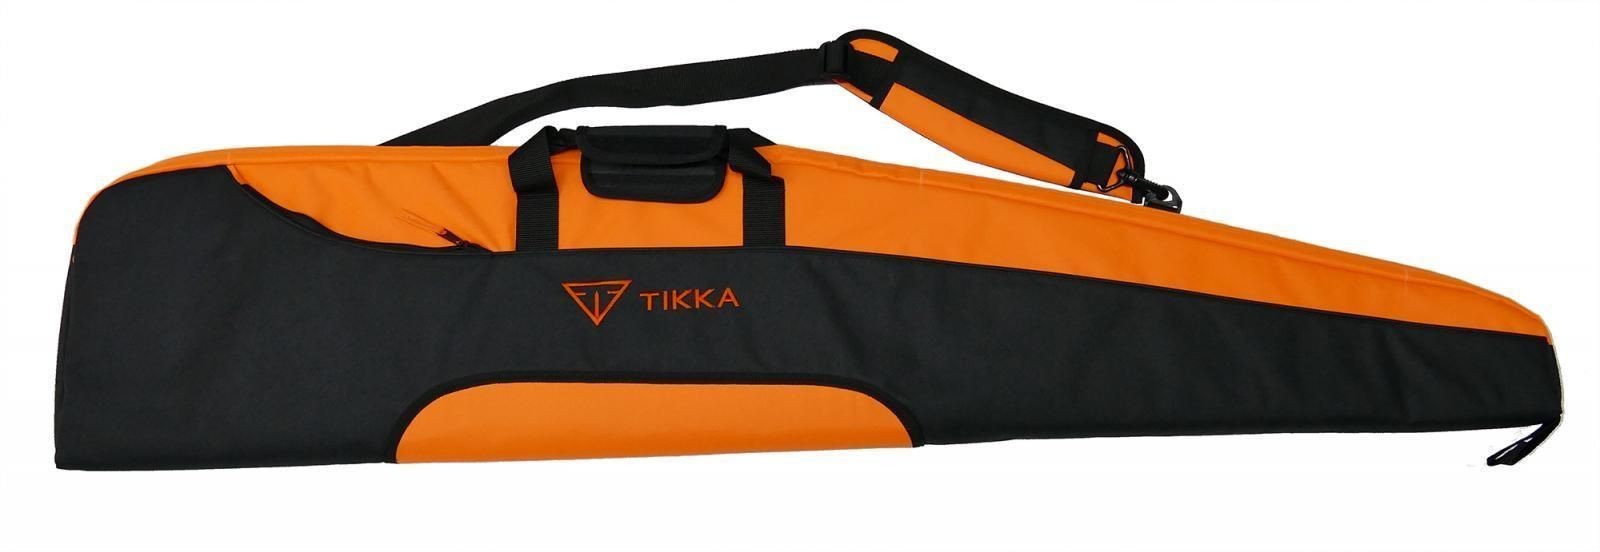 Tikka T3x Adjustable - Black Edition Paket